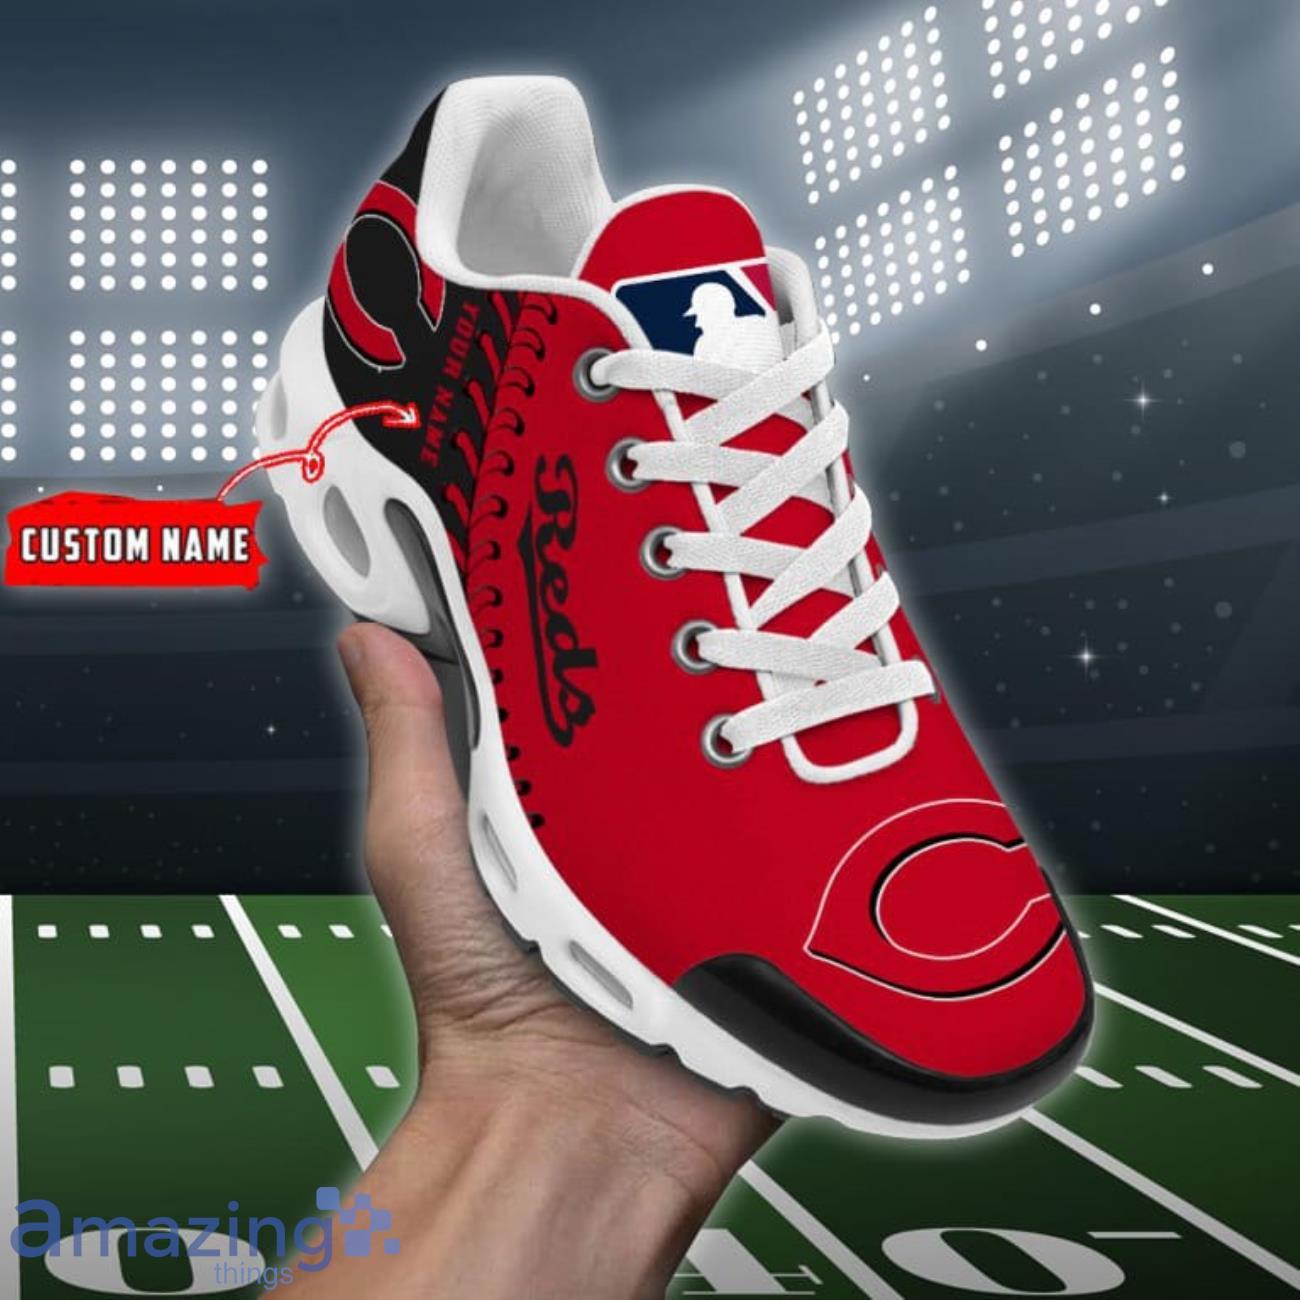 Cincinnati Reds Air Jordan 4 Sneakers Shoes For Men And Women